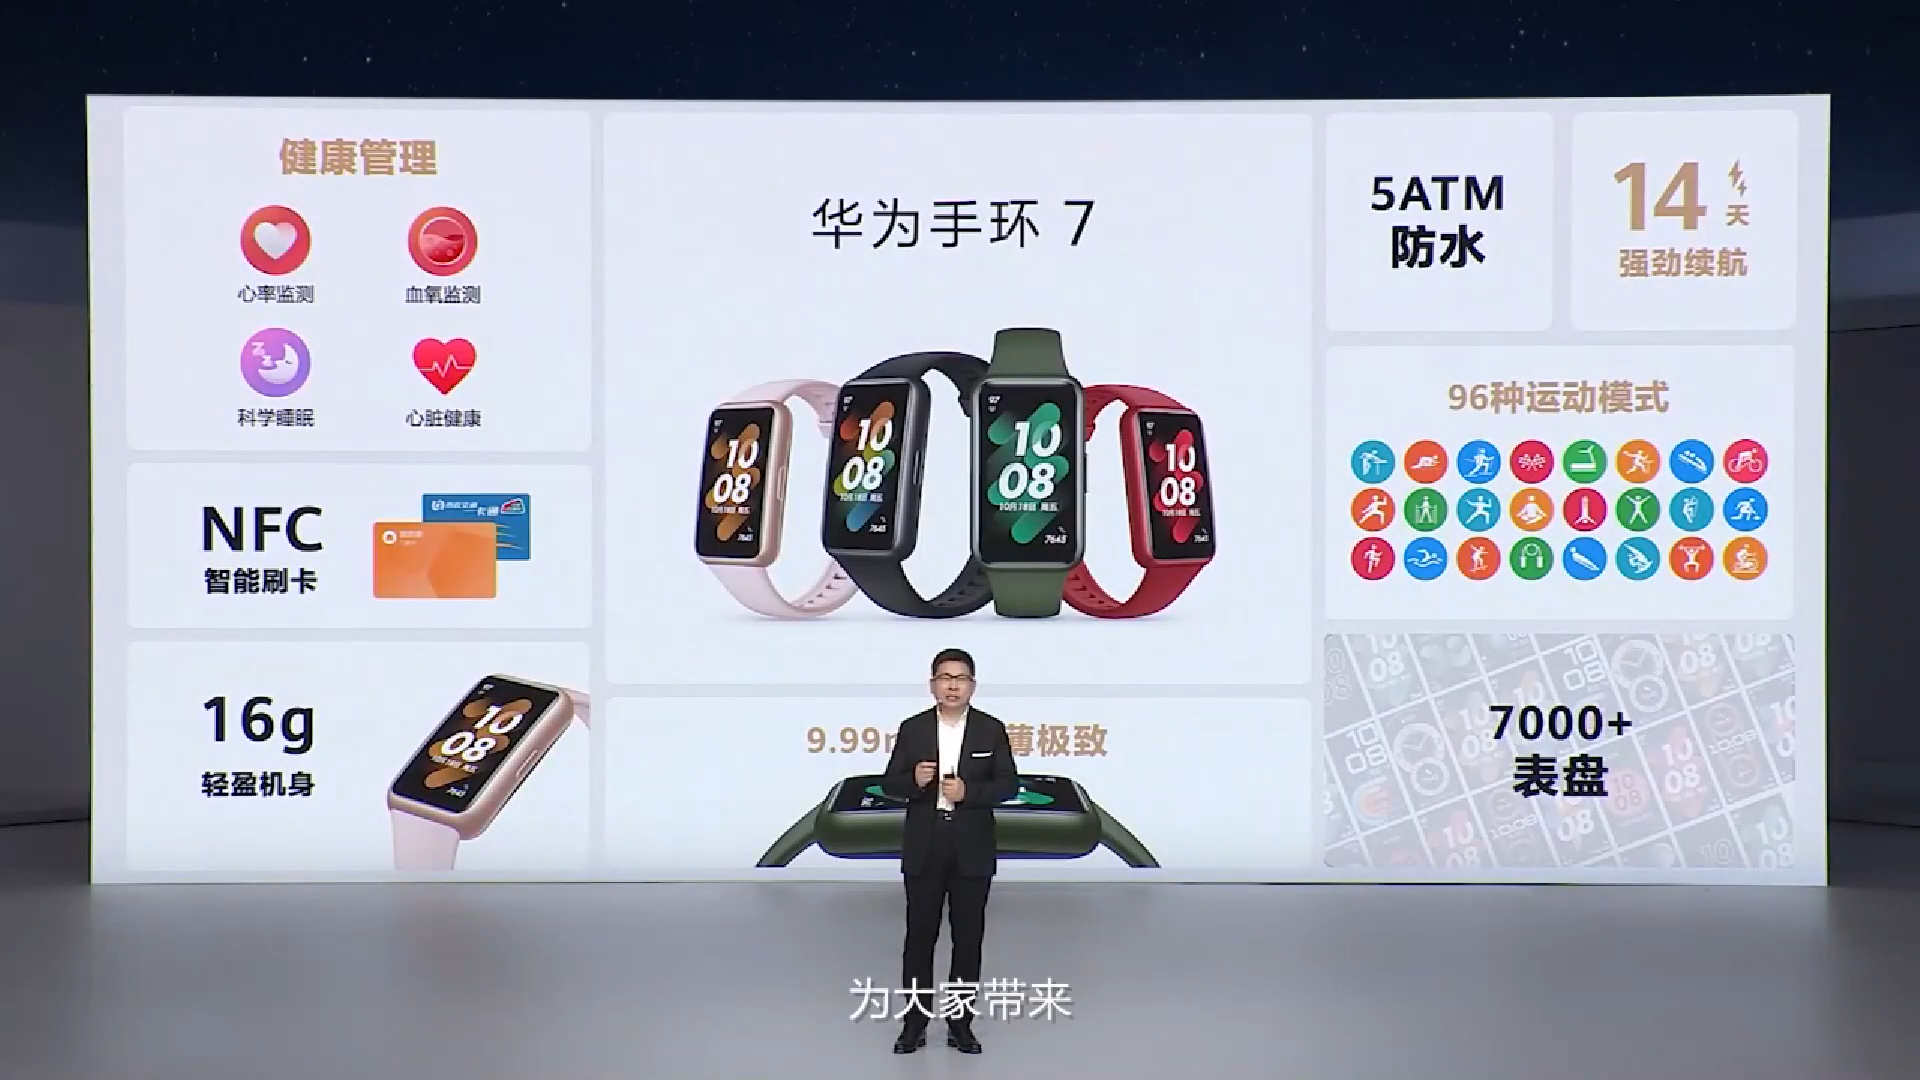 44 - Huawei ha appena rilasciato il Mate Xs 2 a 9999 yuan, che risolve i tre punti deboli dello schermo pieghevole